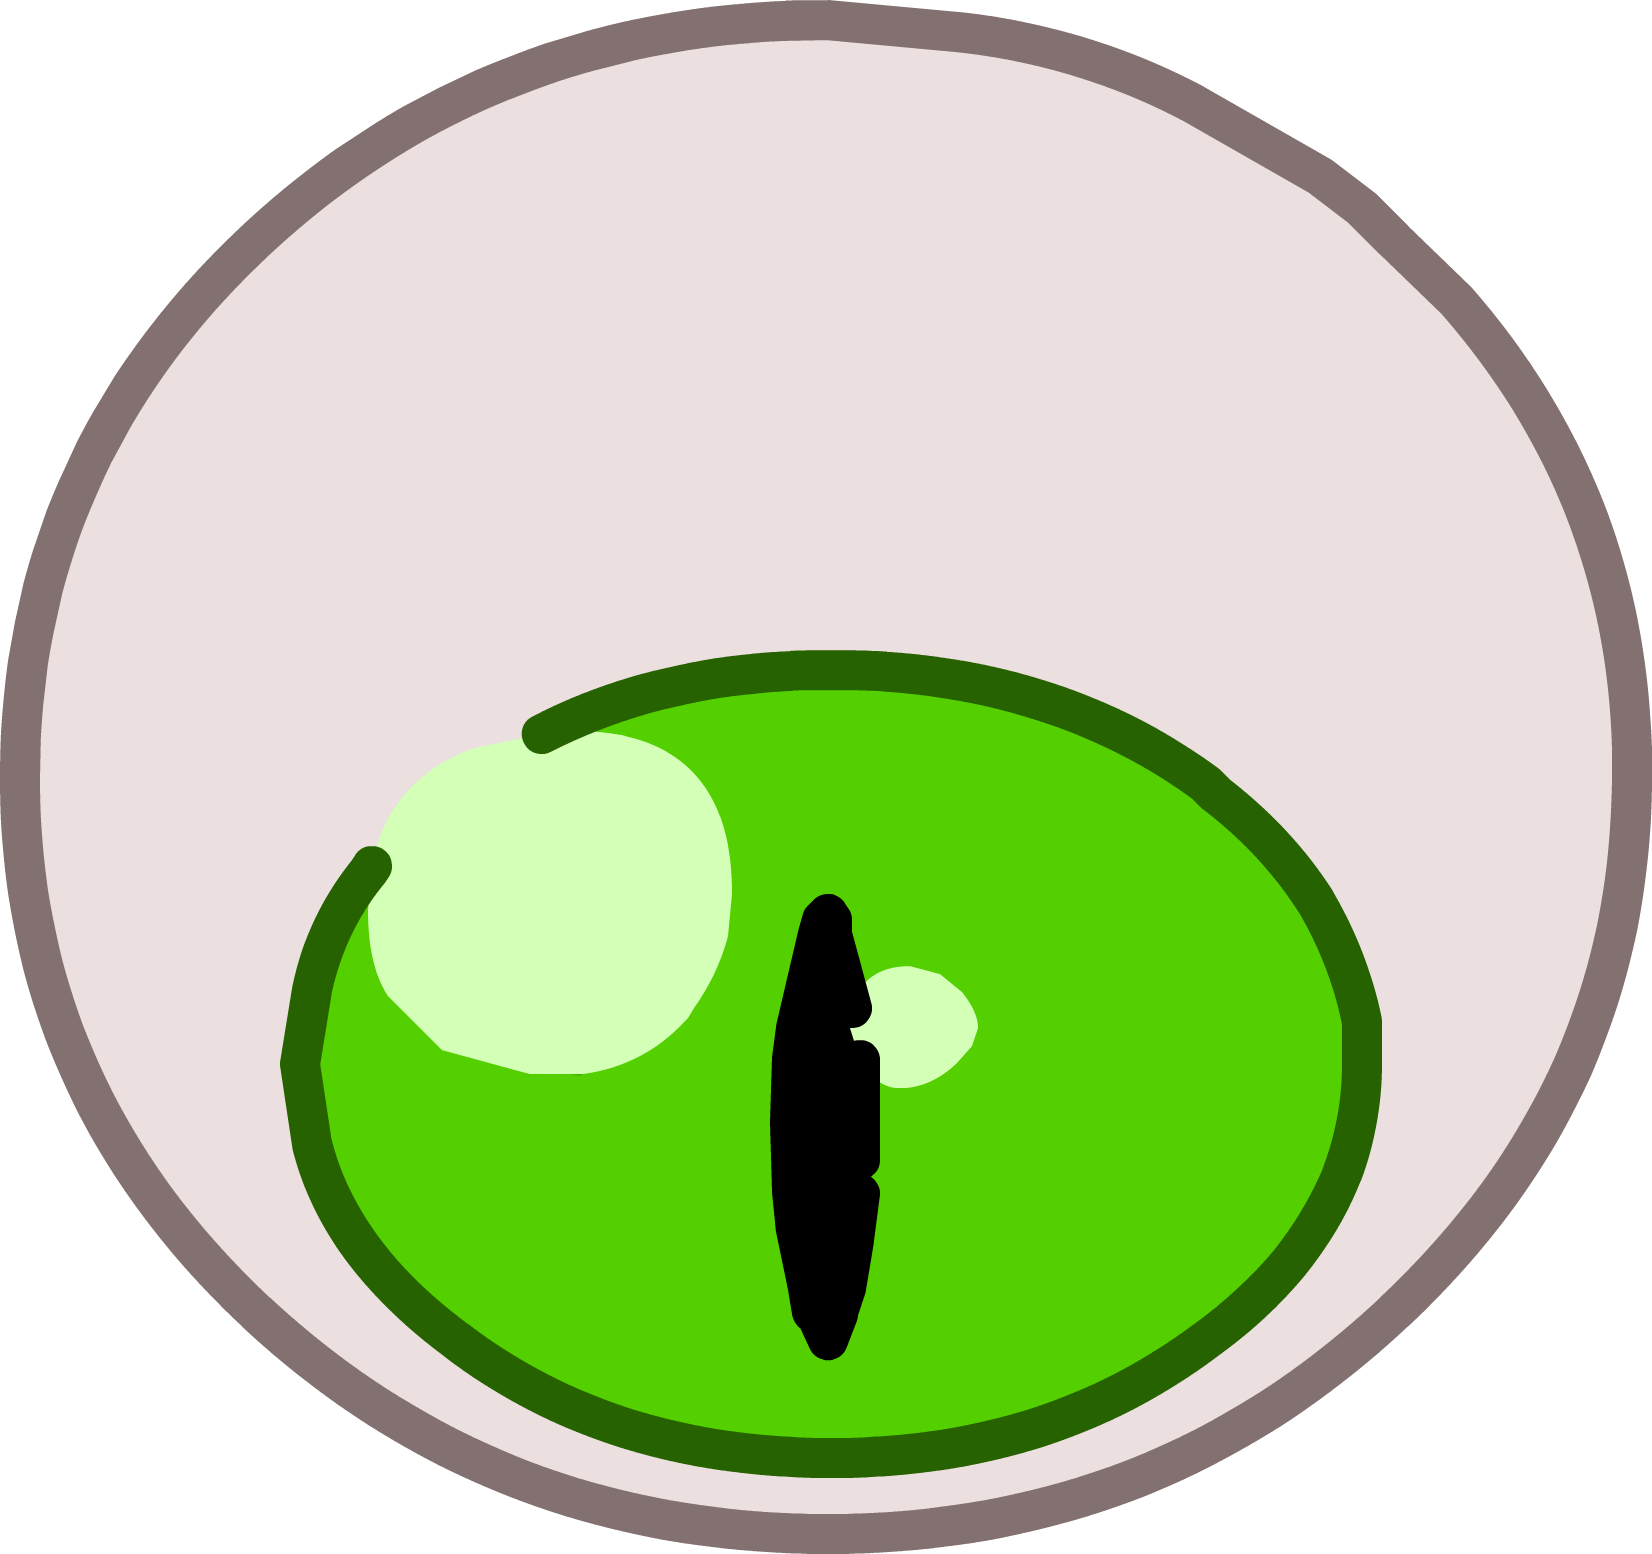 Goblin Eye Icon - Portable Network Graphics (1652x1554)